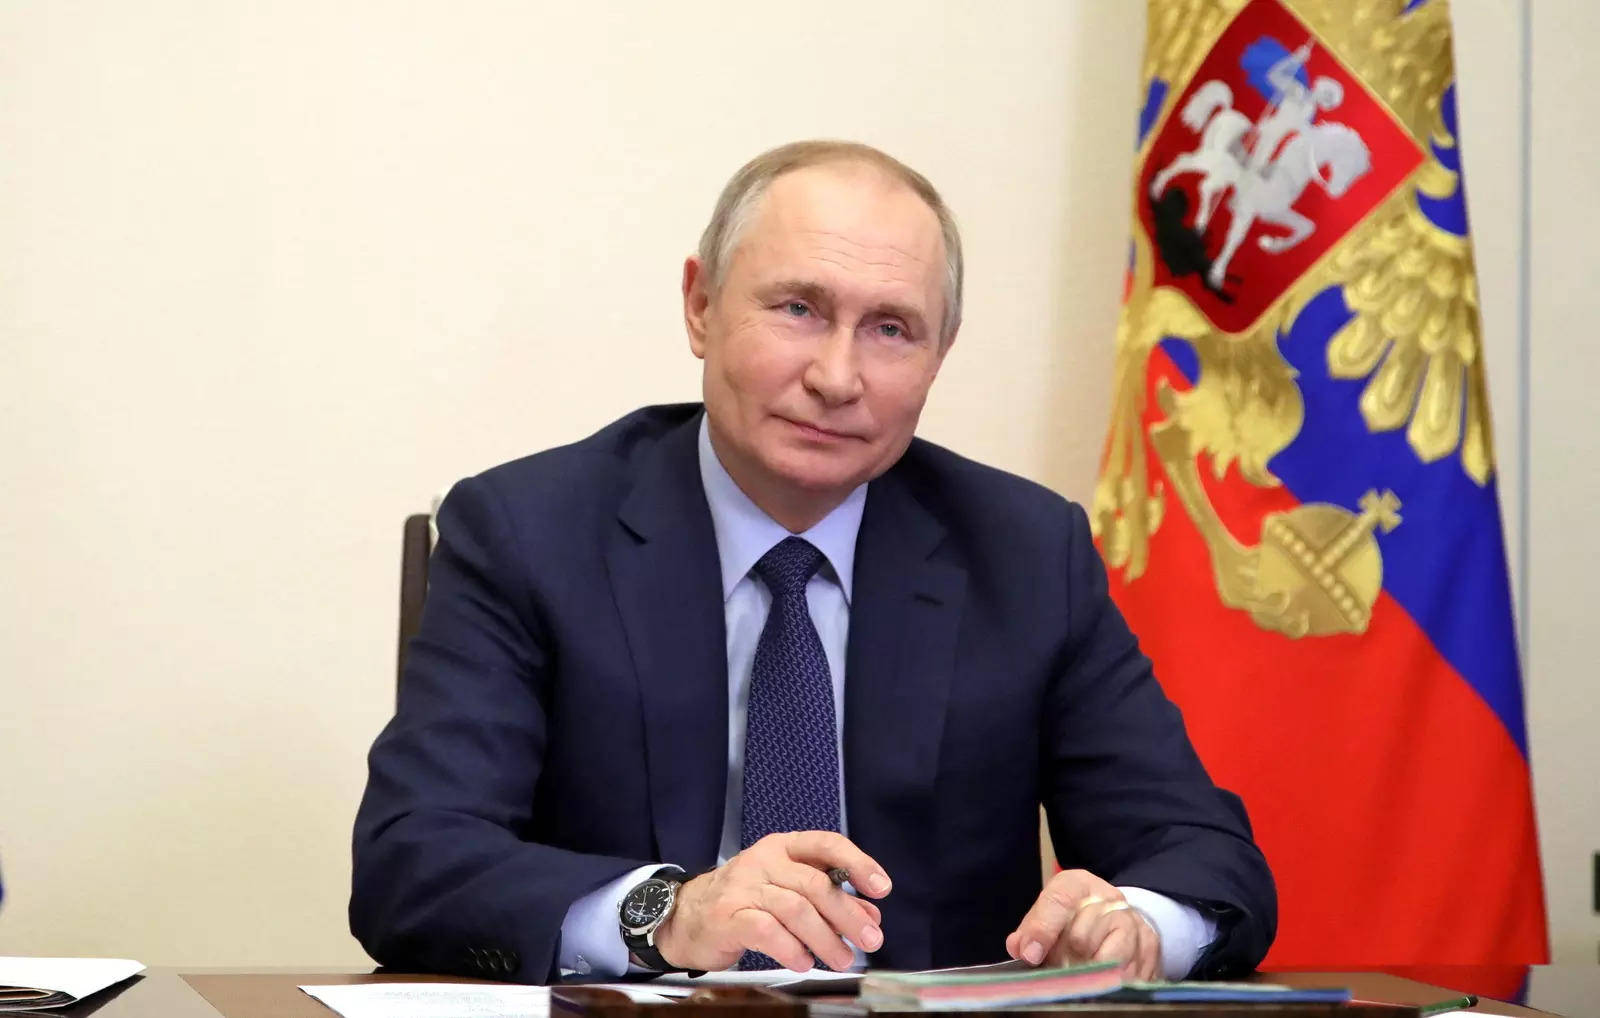 Vladimir Putin Smiling During Conference Wallpaper